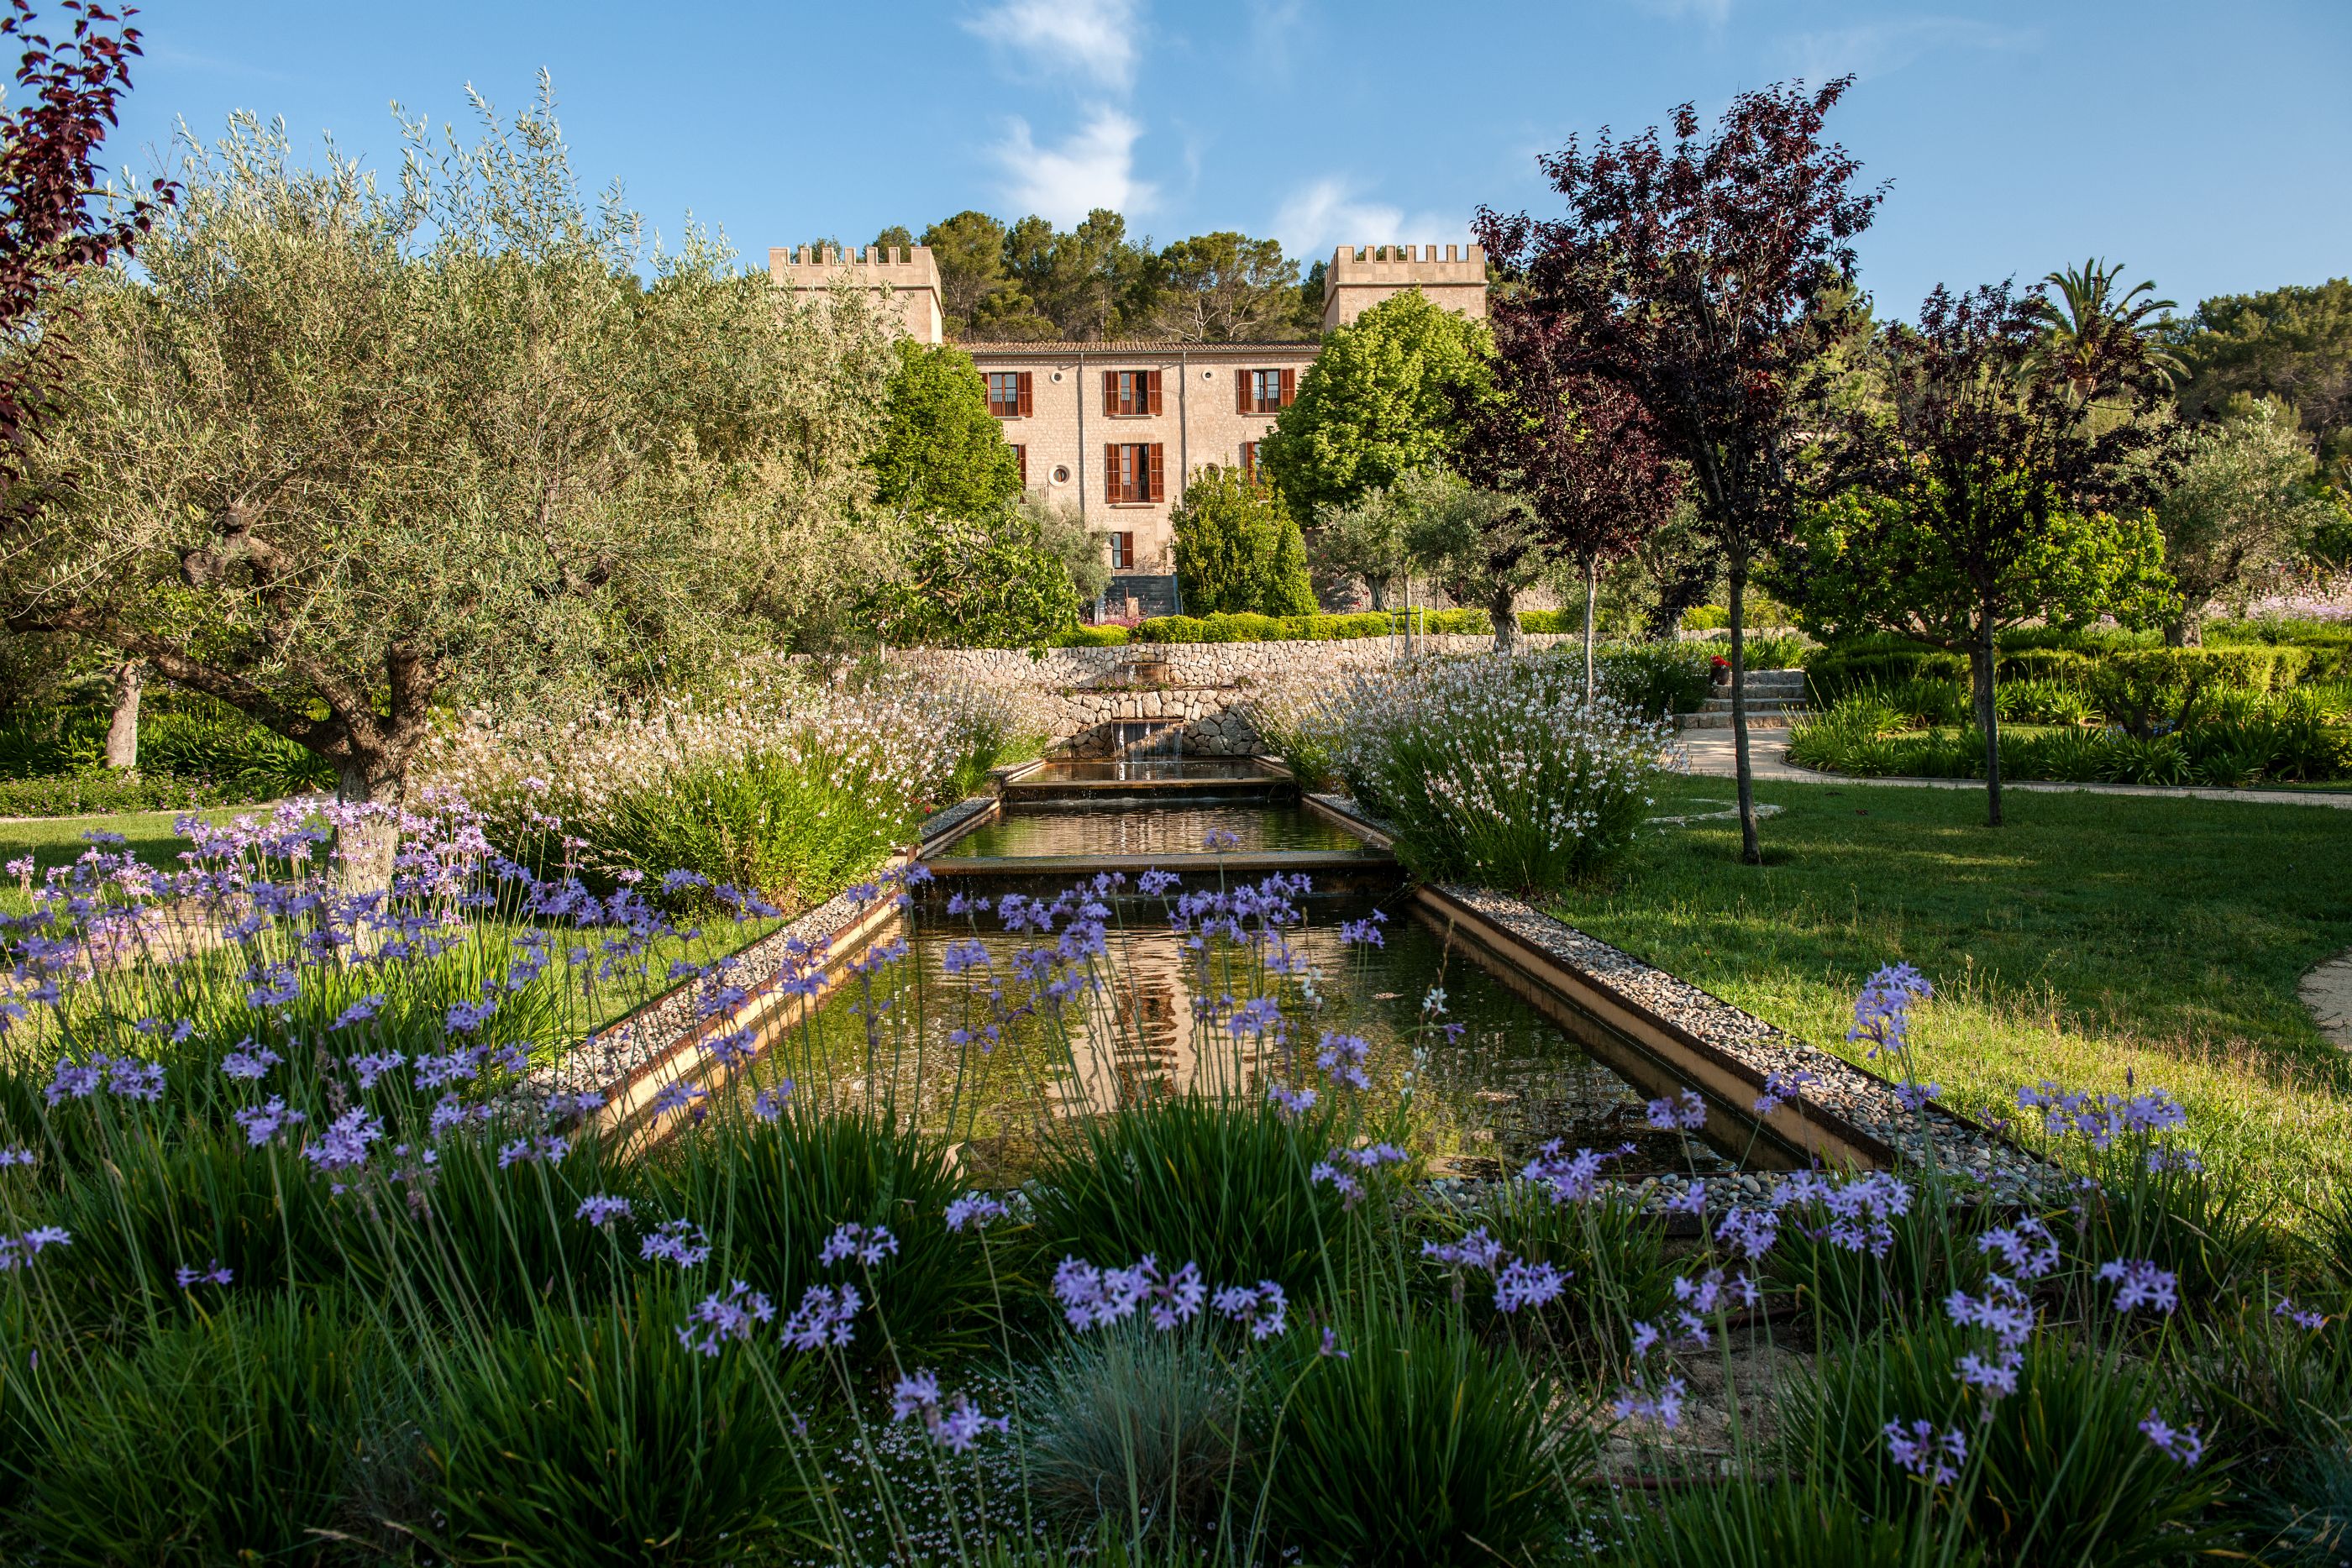 Garden of Castell son Claret, Mallorca